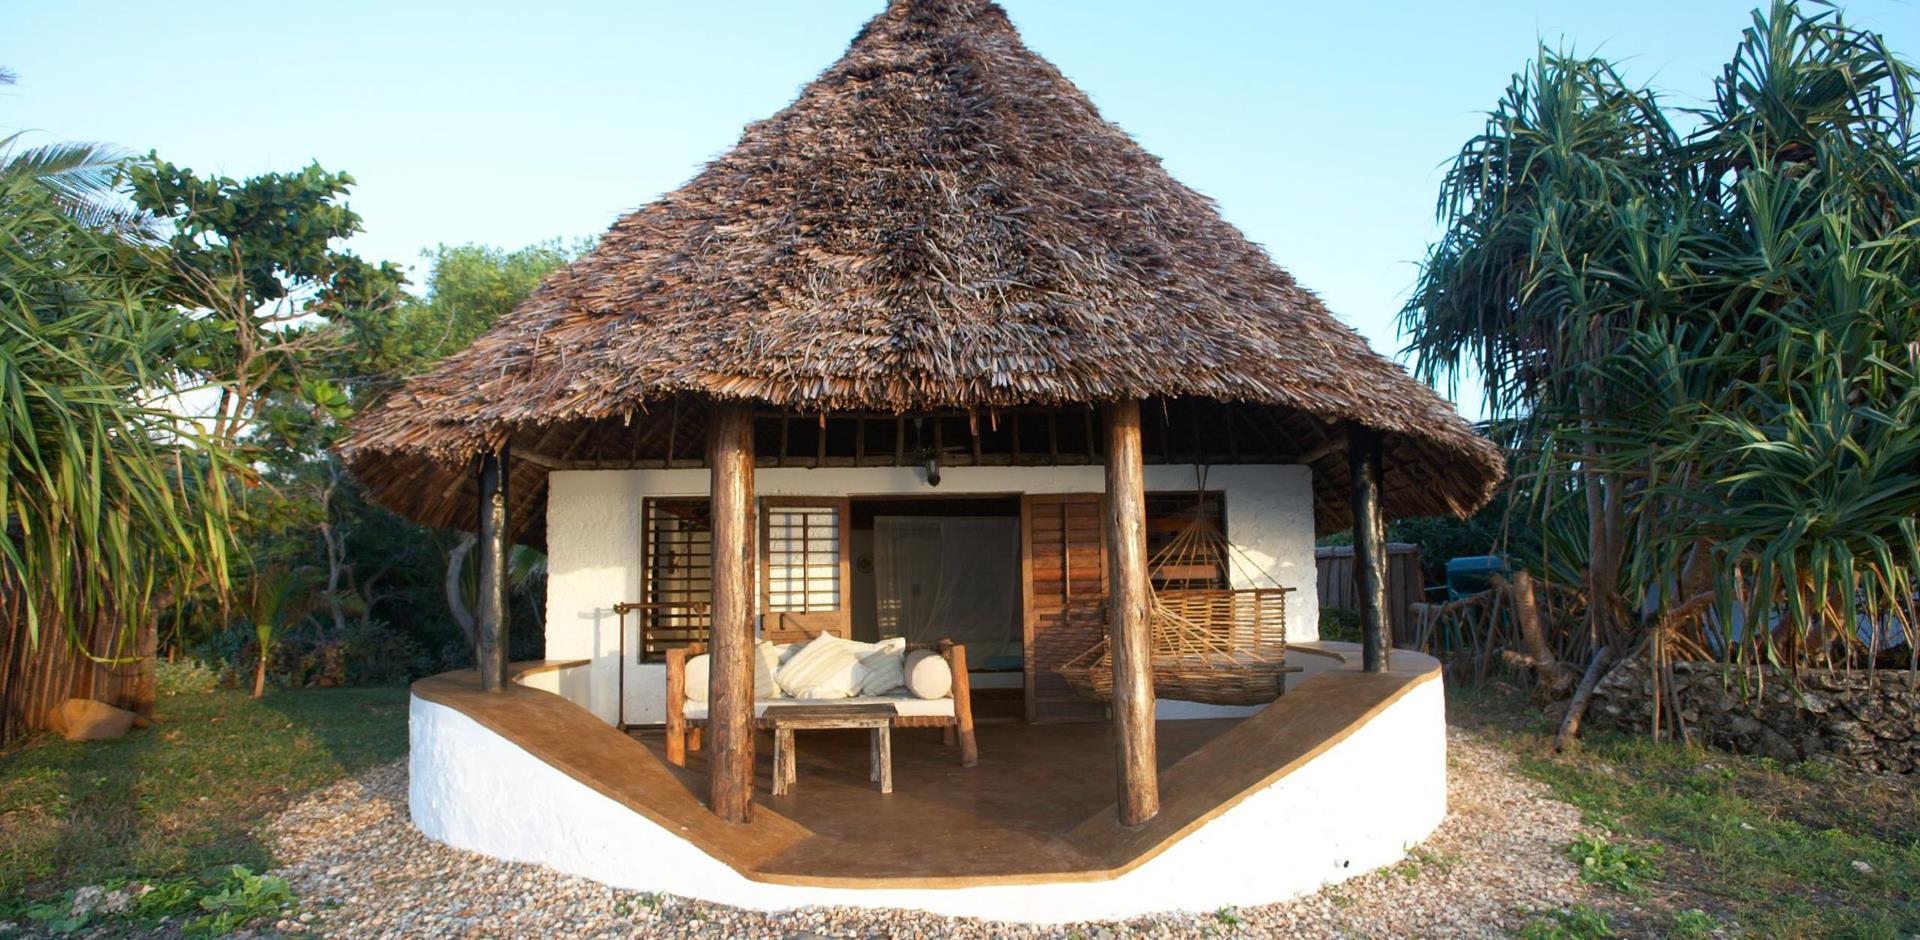 Accommodation, Tanzania, A&K